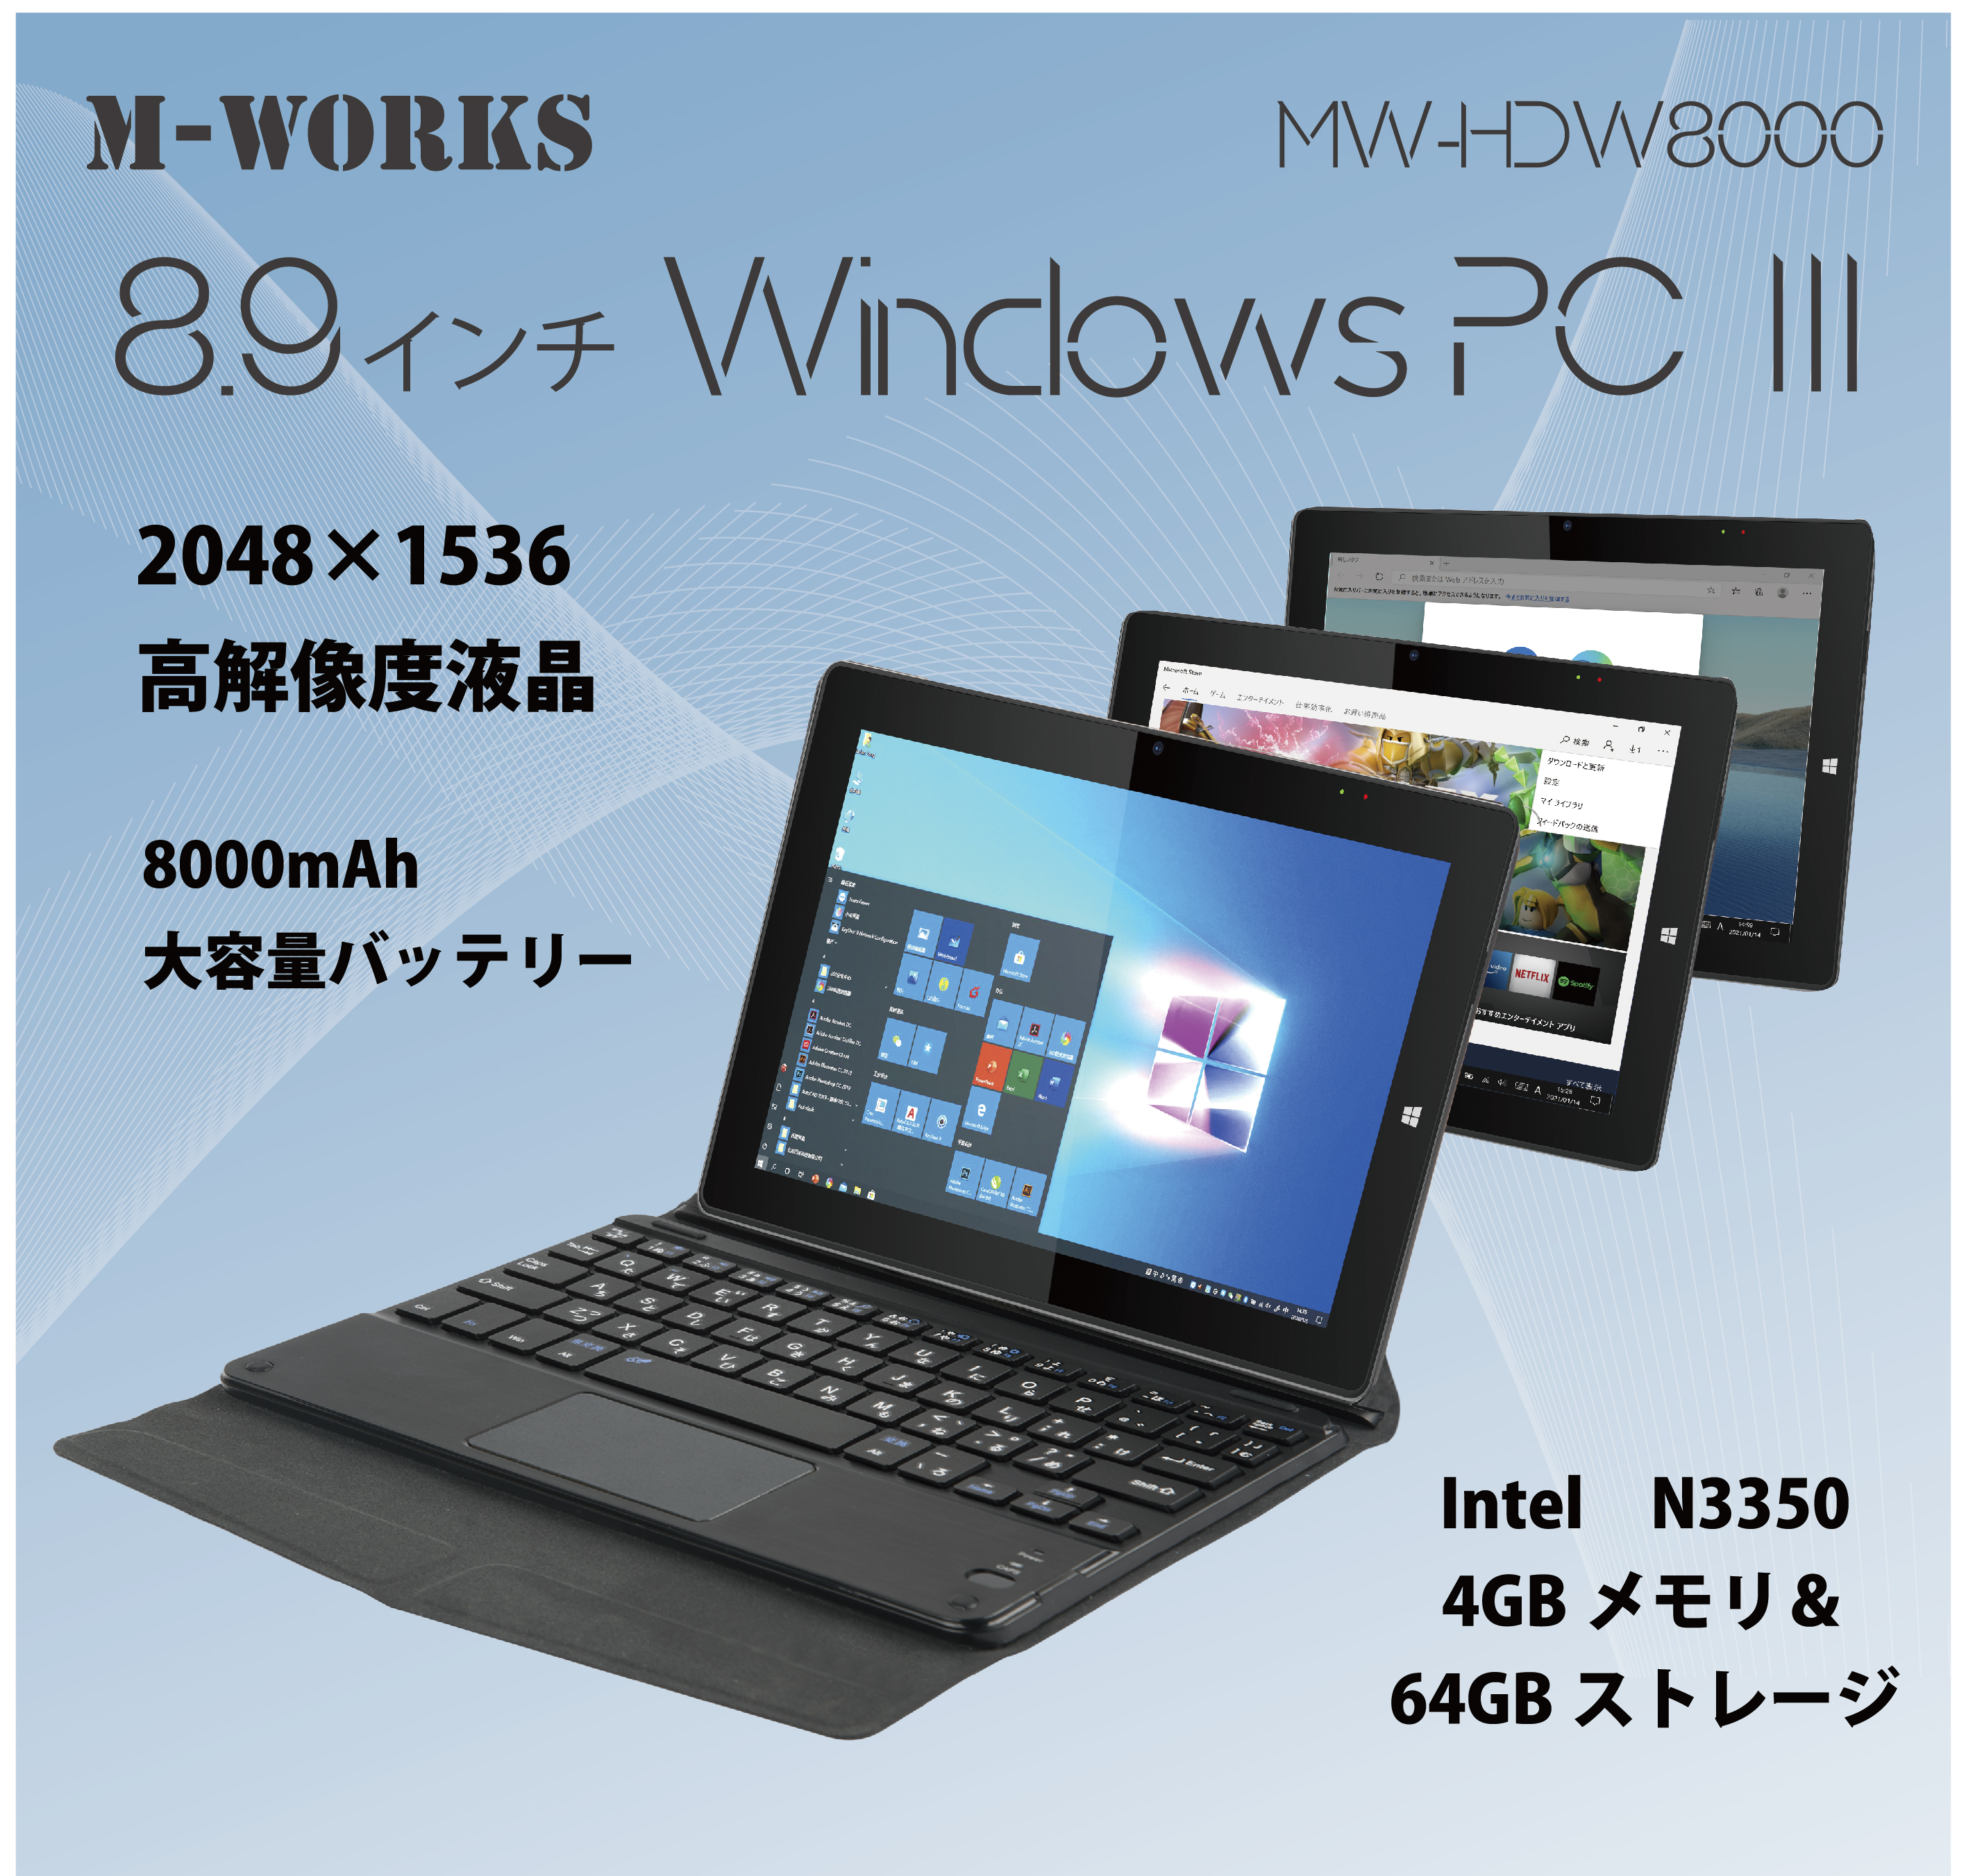 M-WORKS 8.9インチタブレットWindowsPC Ⅲ | 株式会社サイエル 